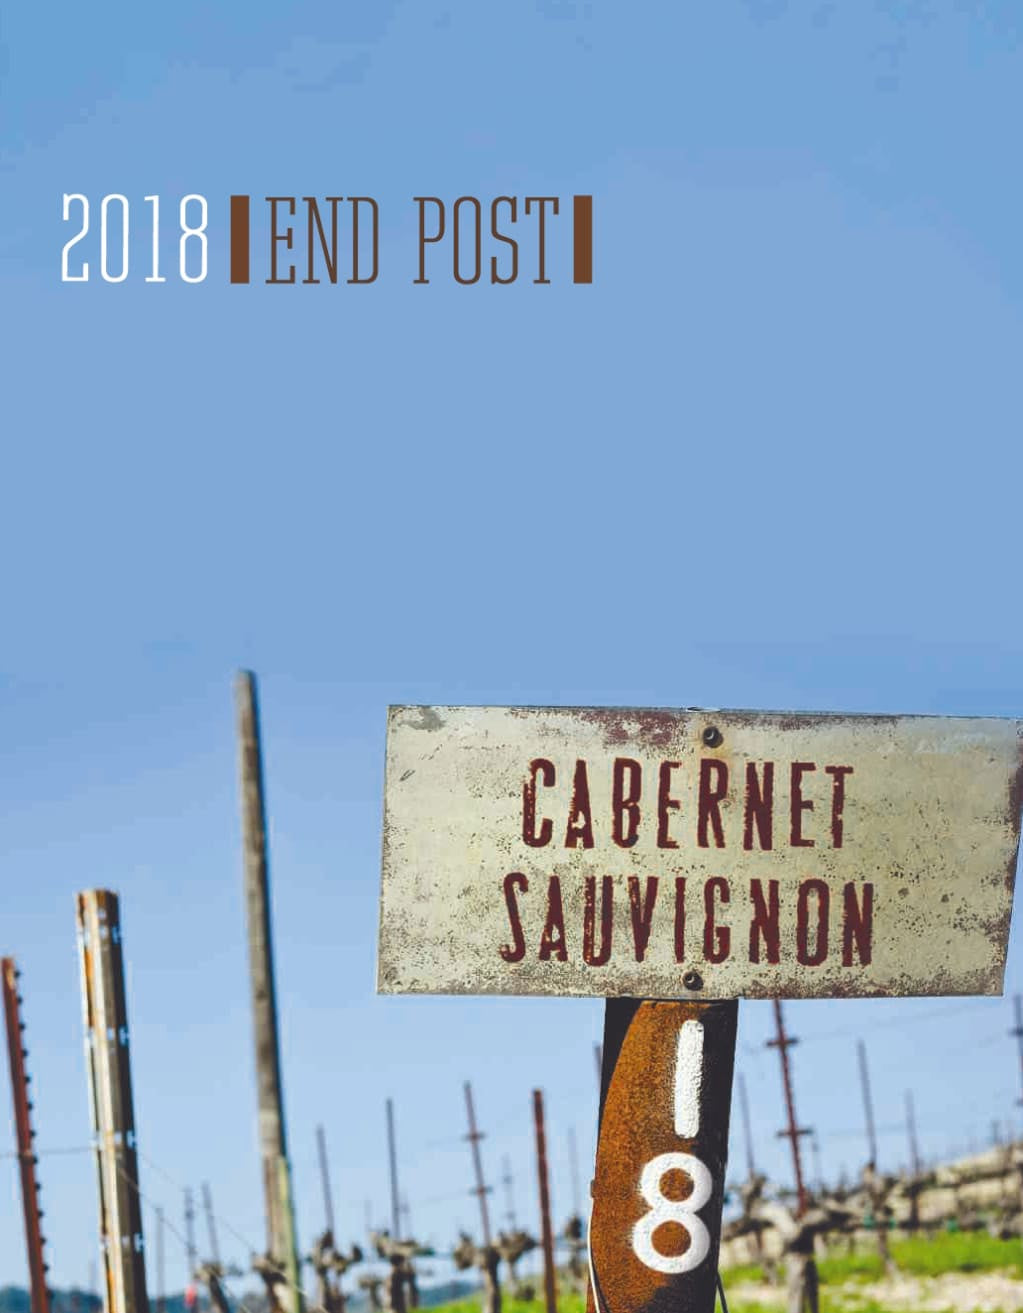 Adelaida 2018 End Post Cabernet Sauvignon